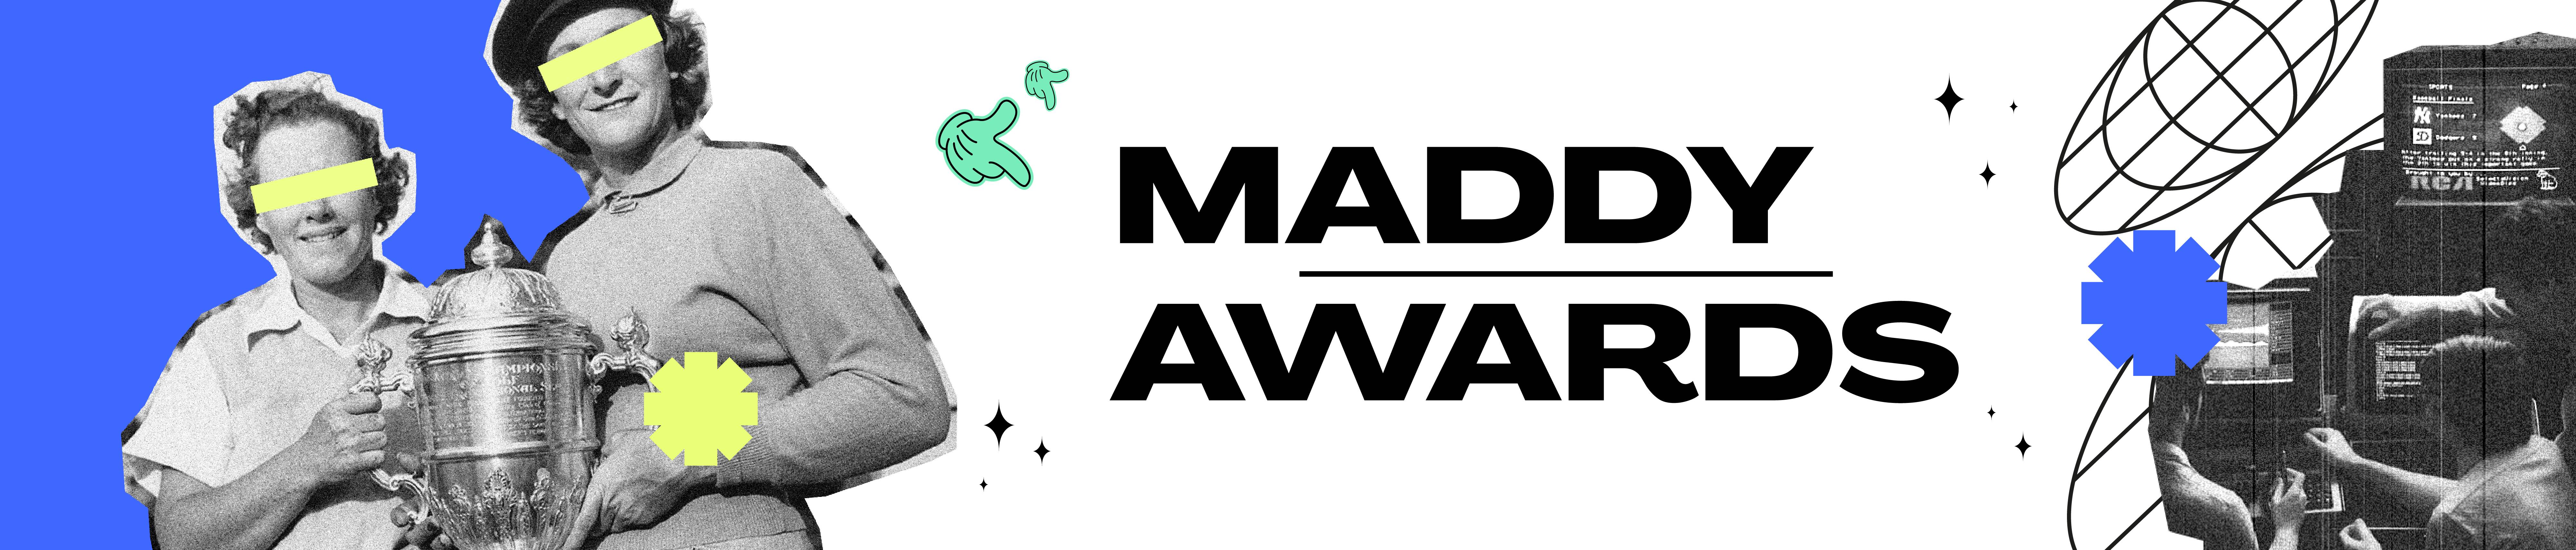 maddy awards